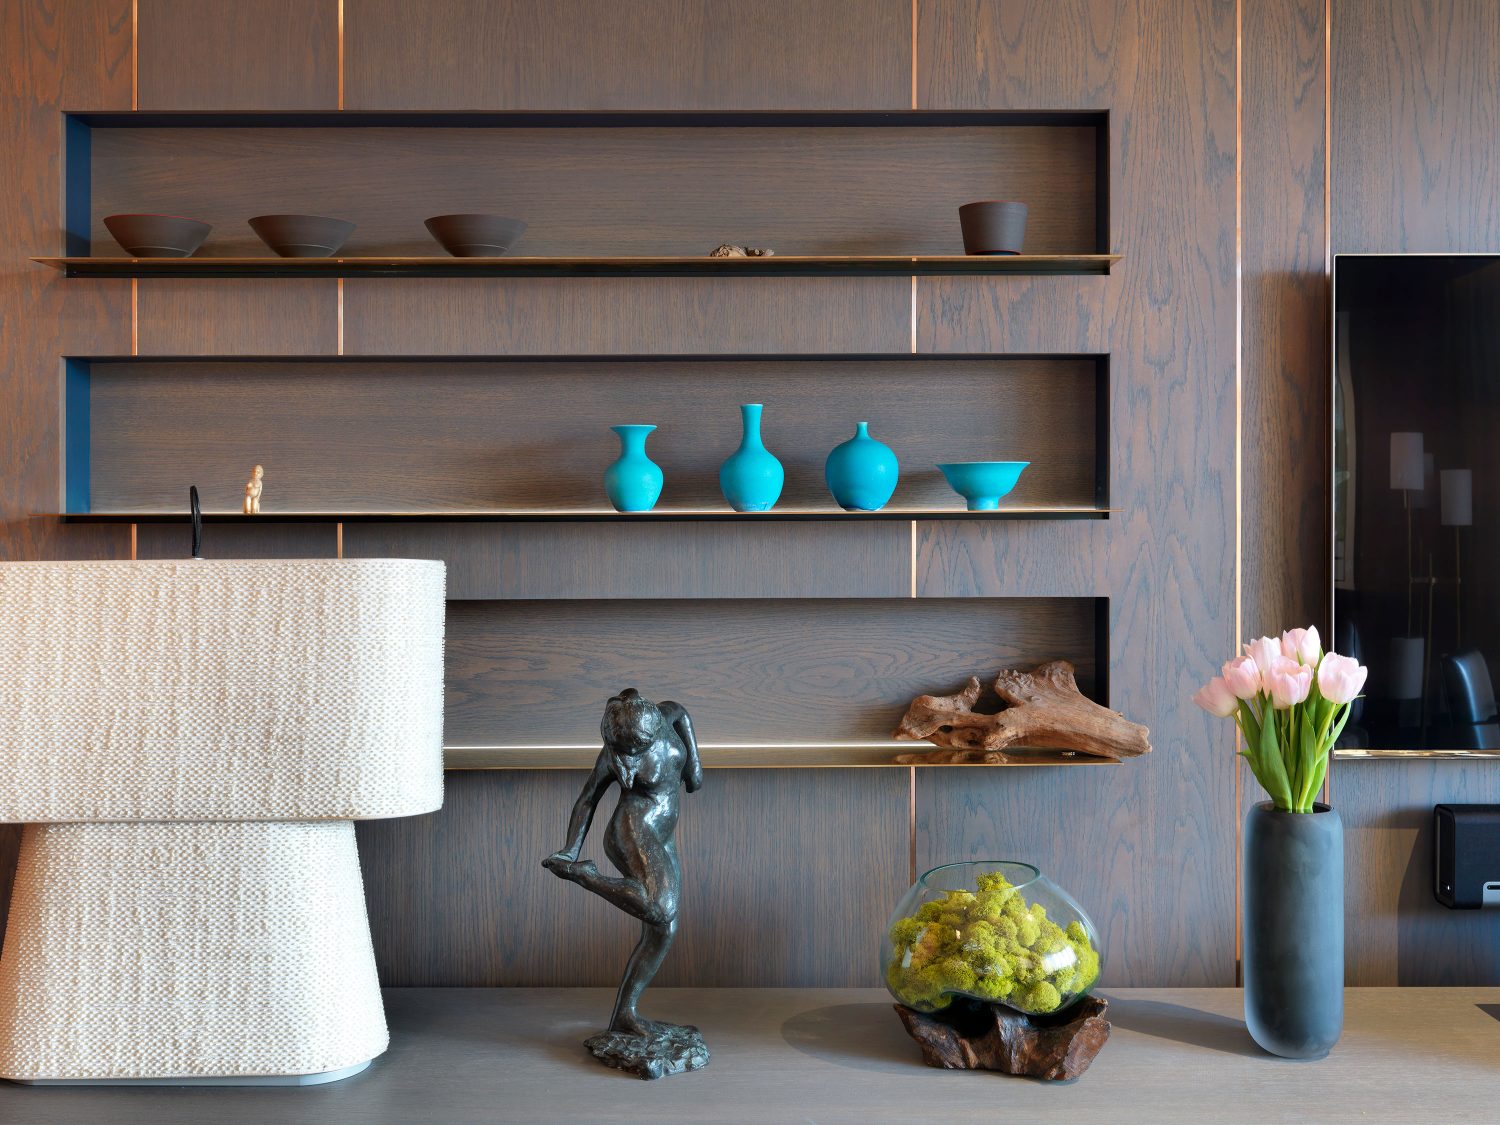 Backlit shelves - Daniel Hopwood home design - interior design London